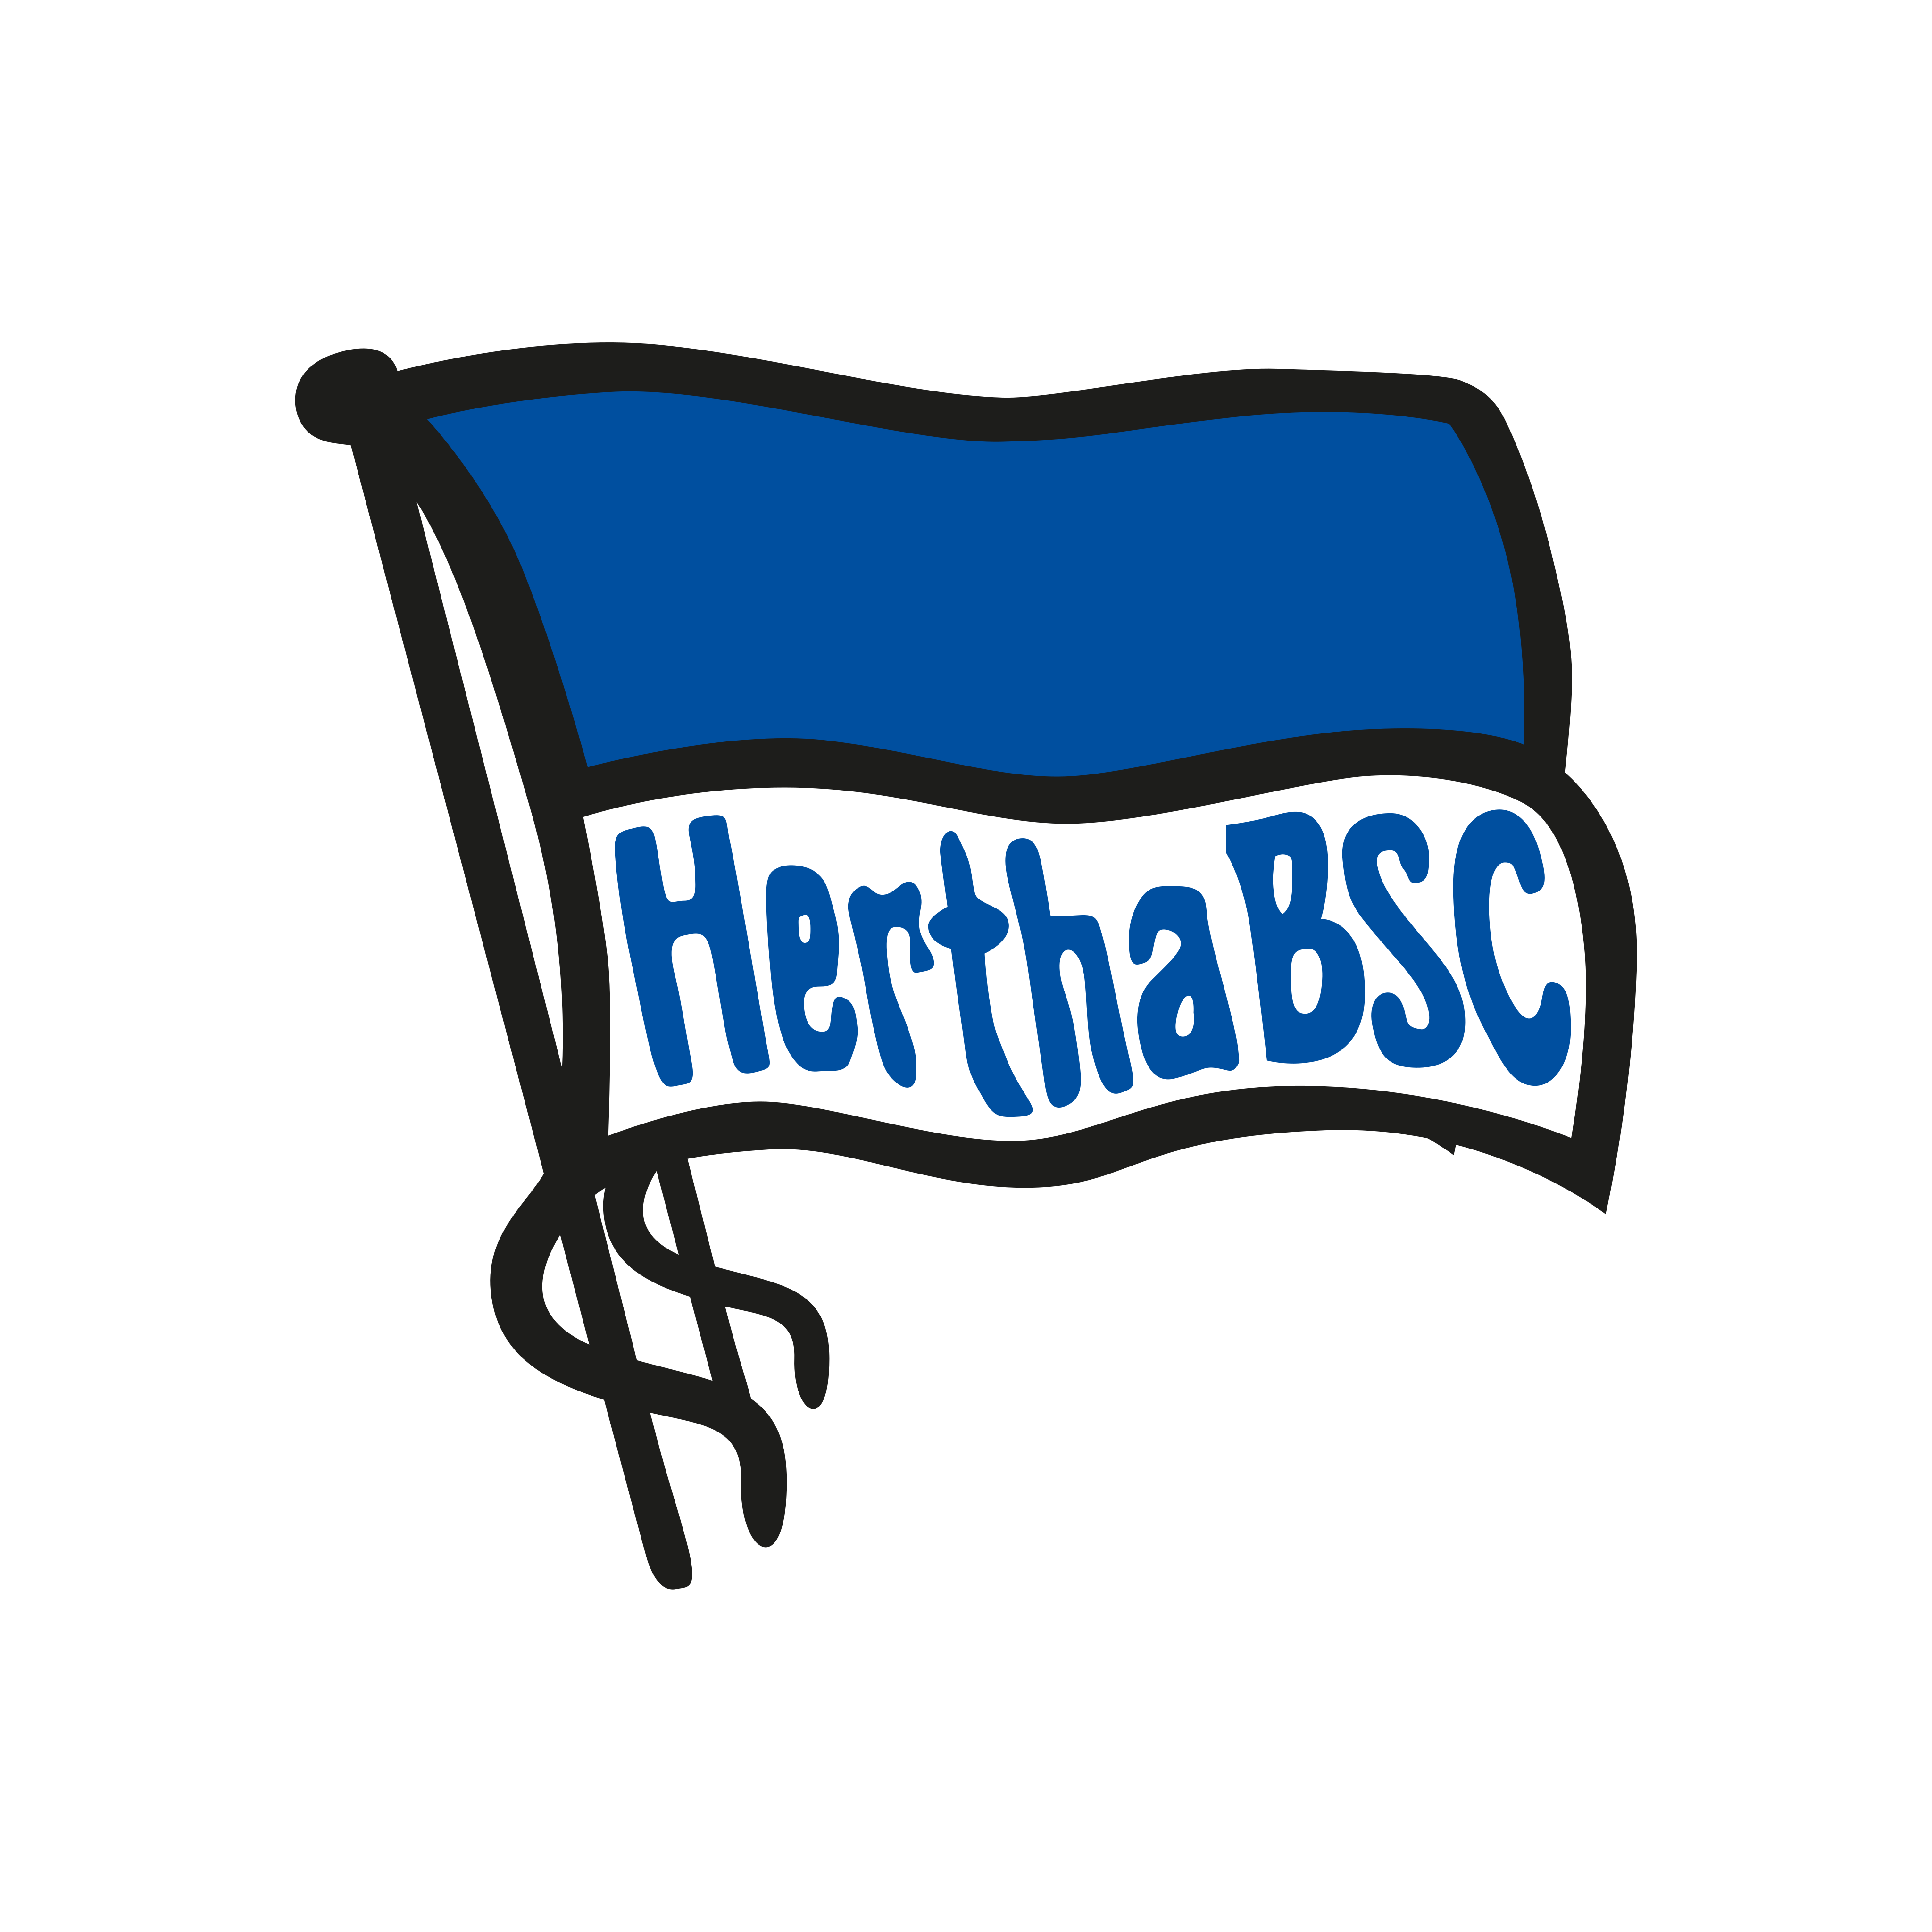 hertha bsc logo 0 - Hertha BSC Logo